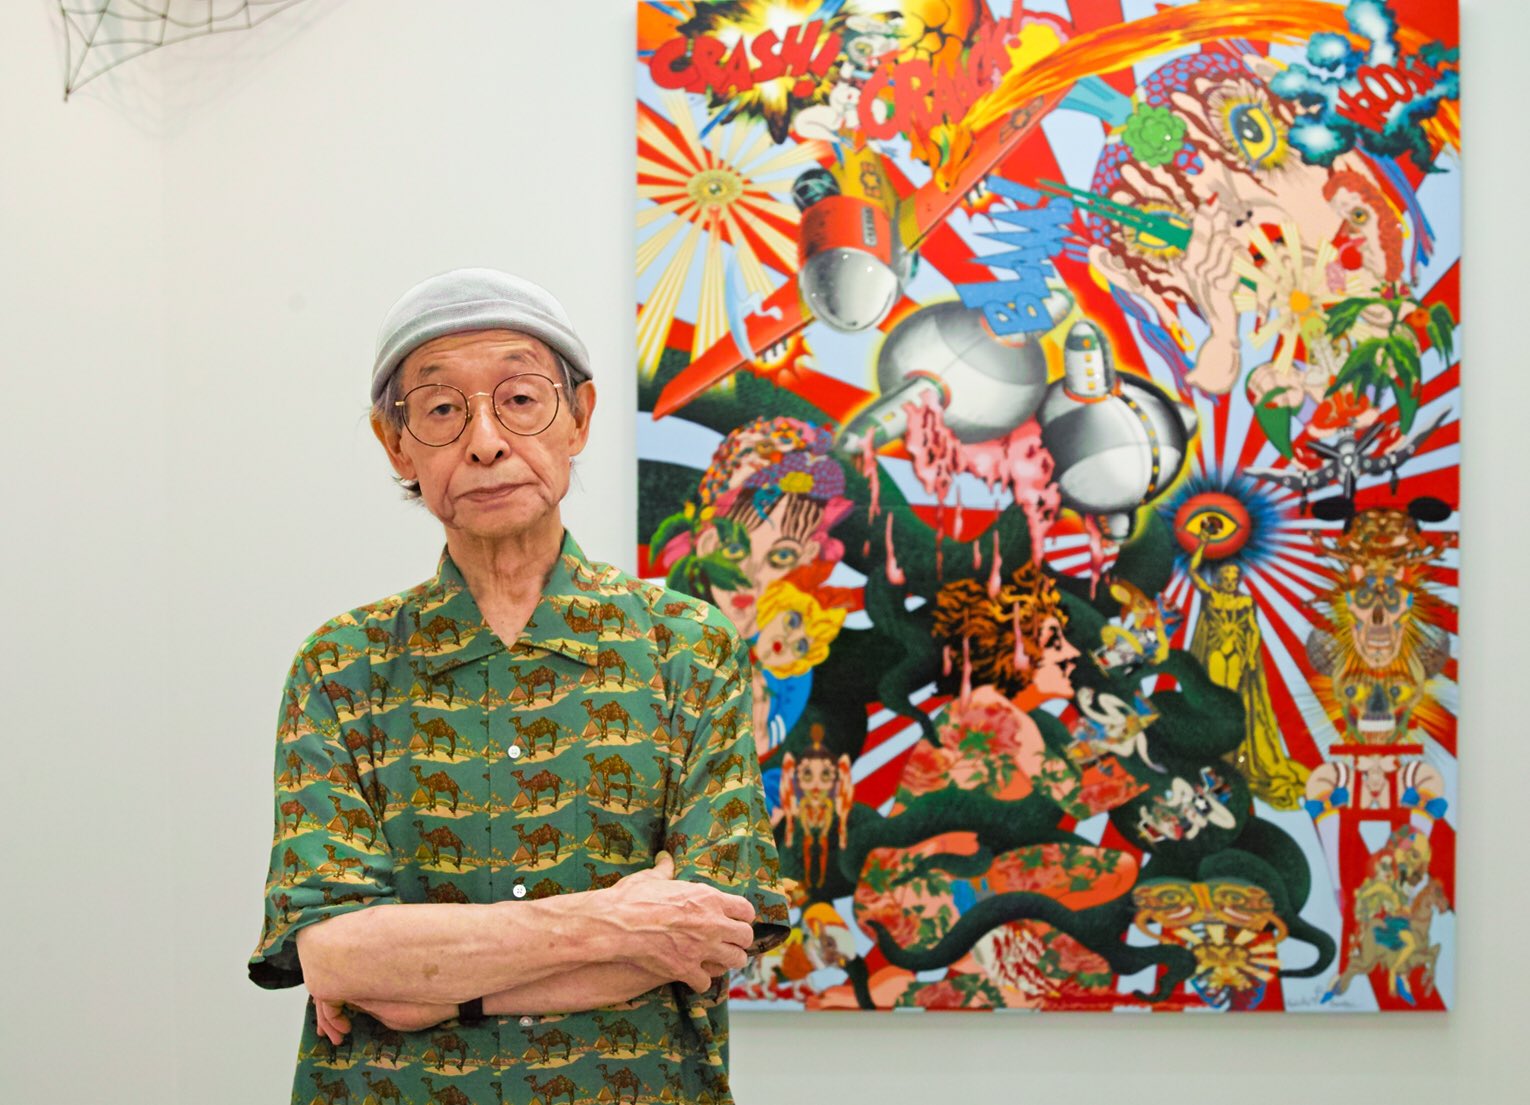  iDesign | Keiichi Tanaami - Nghệ thuật đến từ những giấc mơ, kí ức và ảo giác